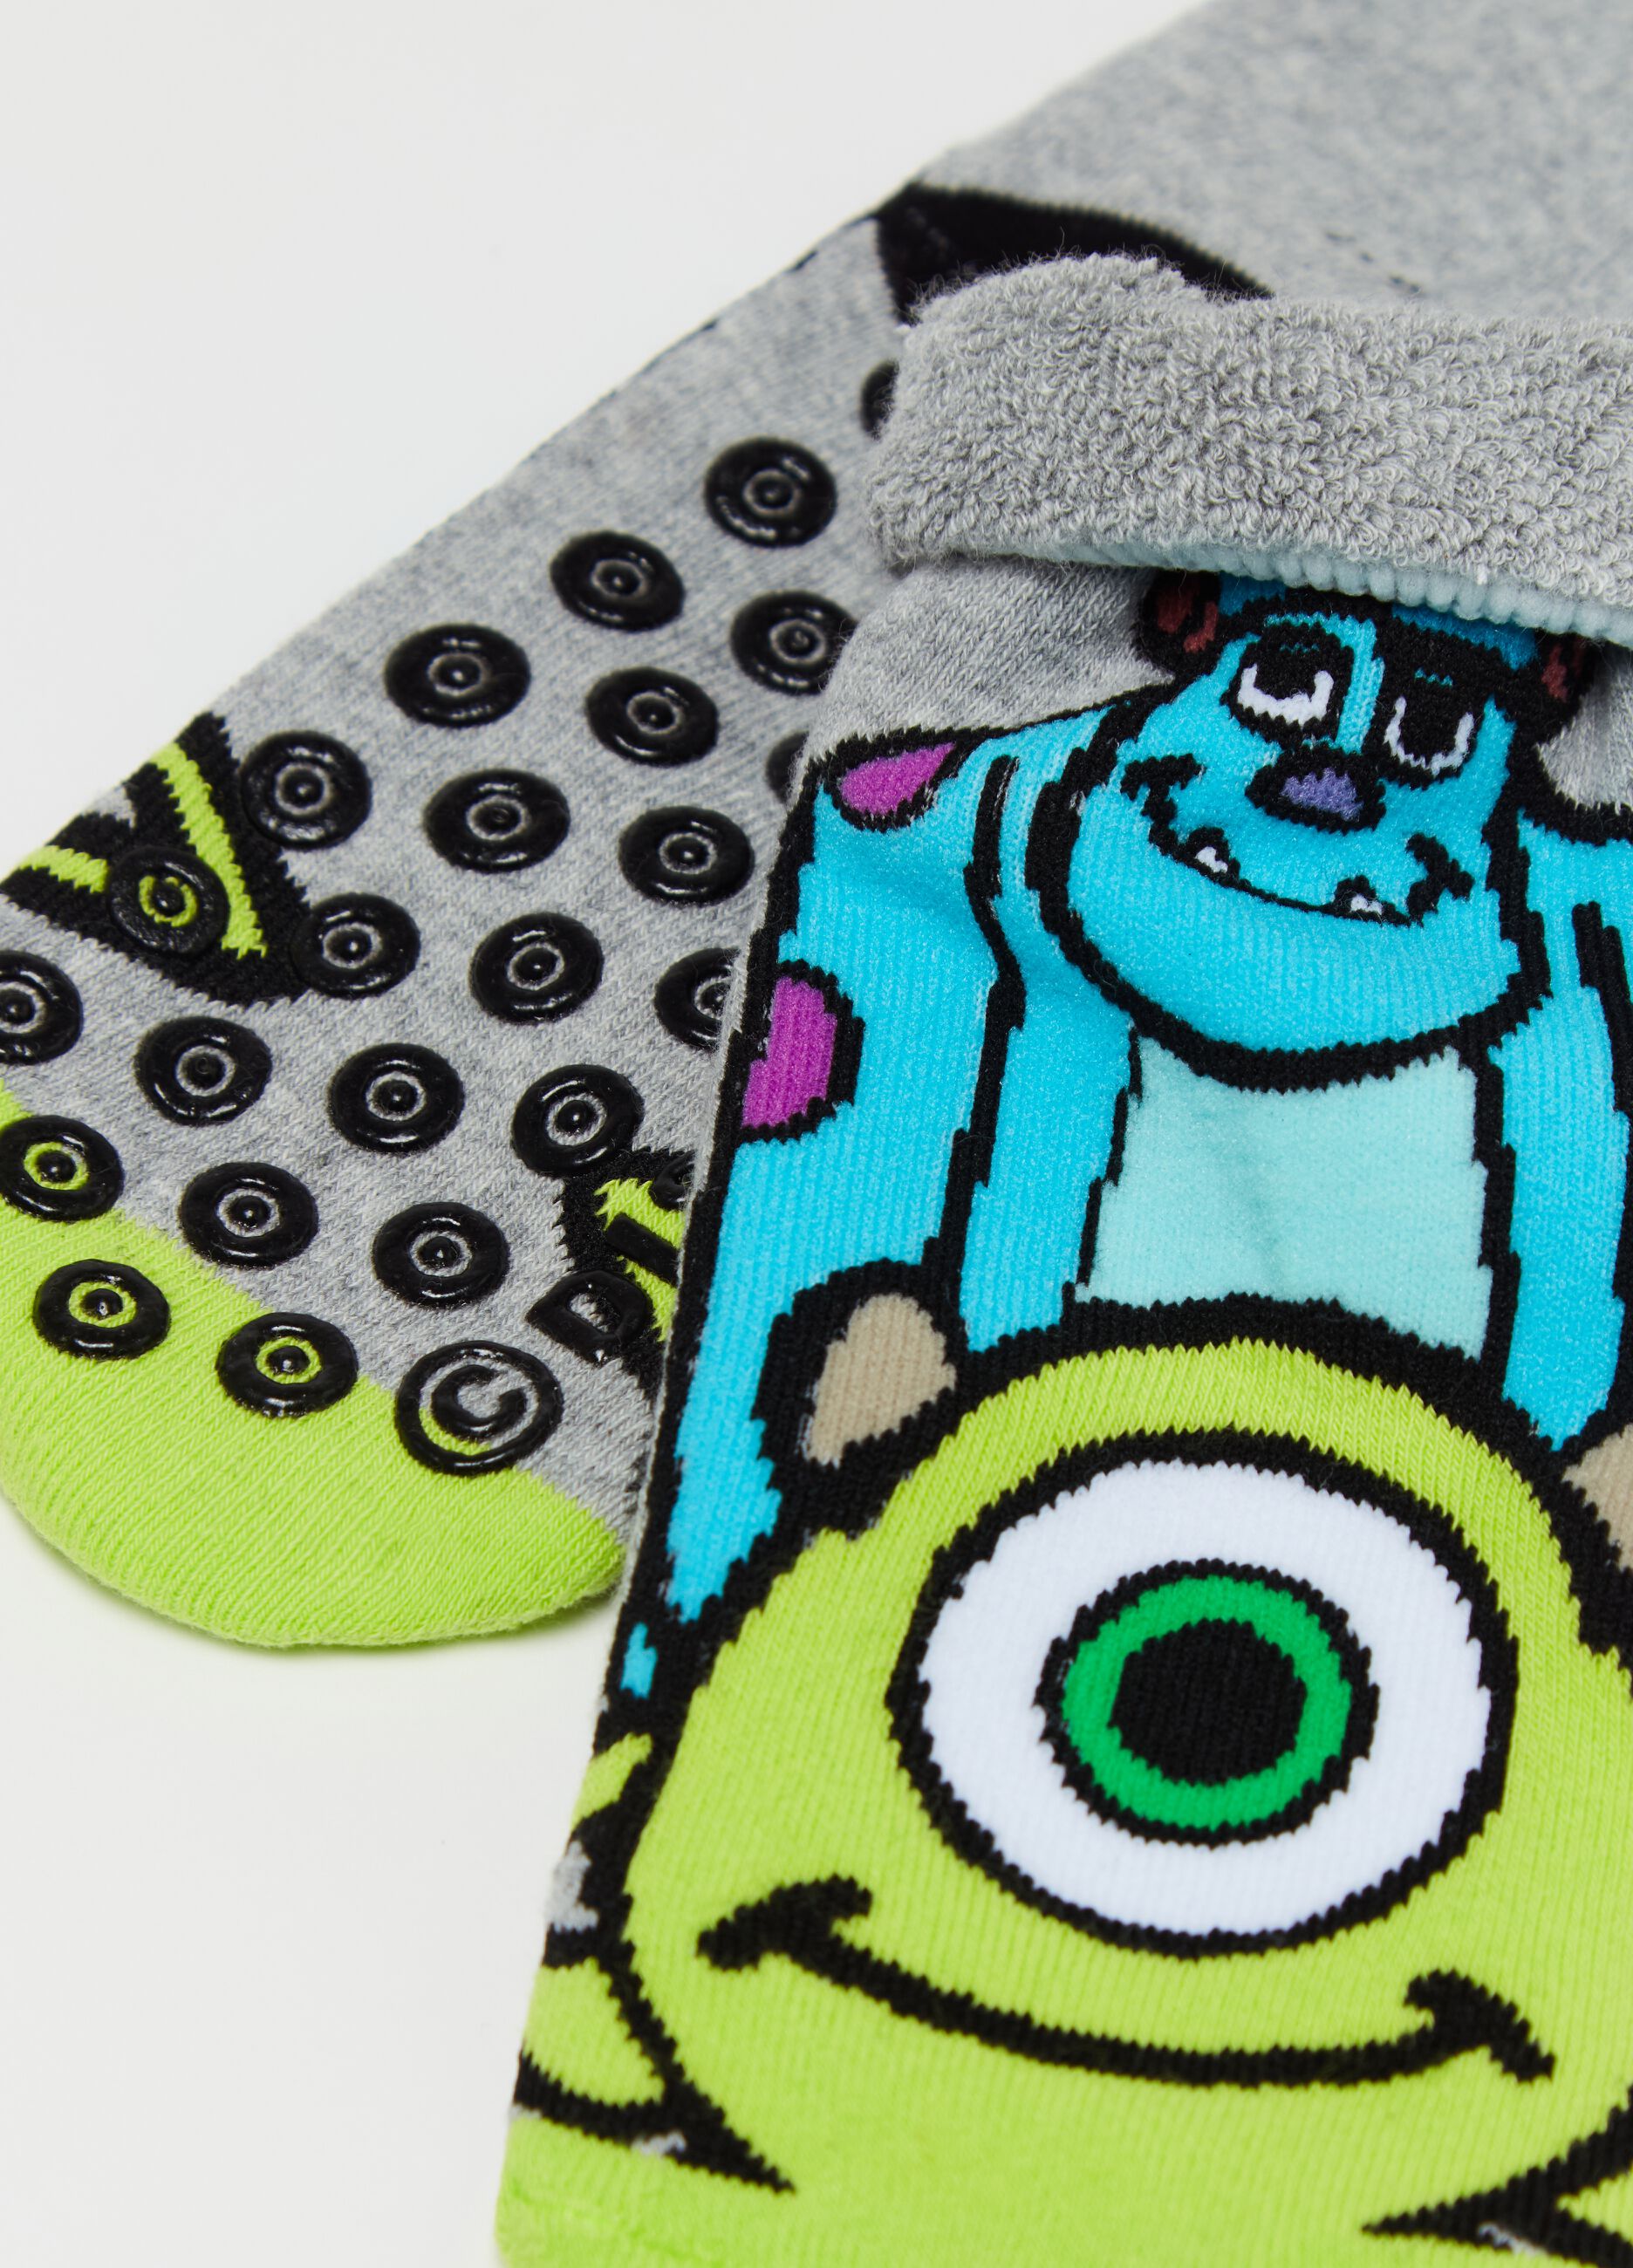 Slipper socks with Monsters & Co. design